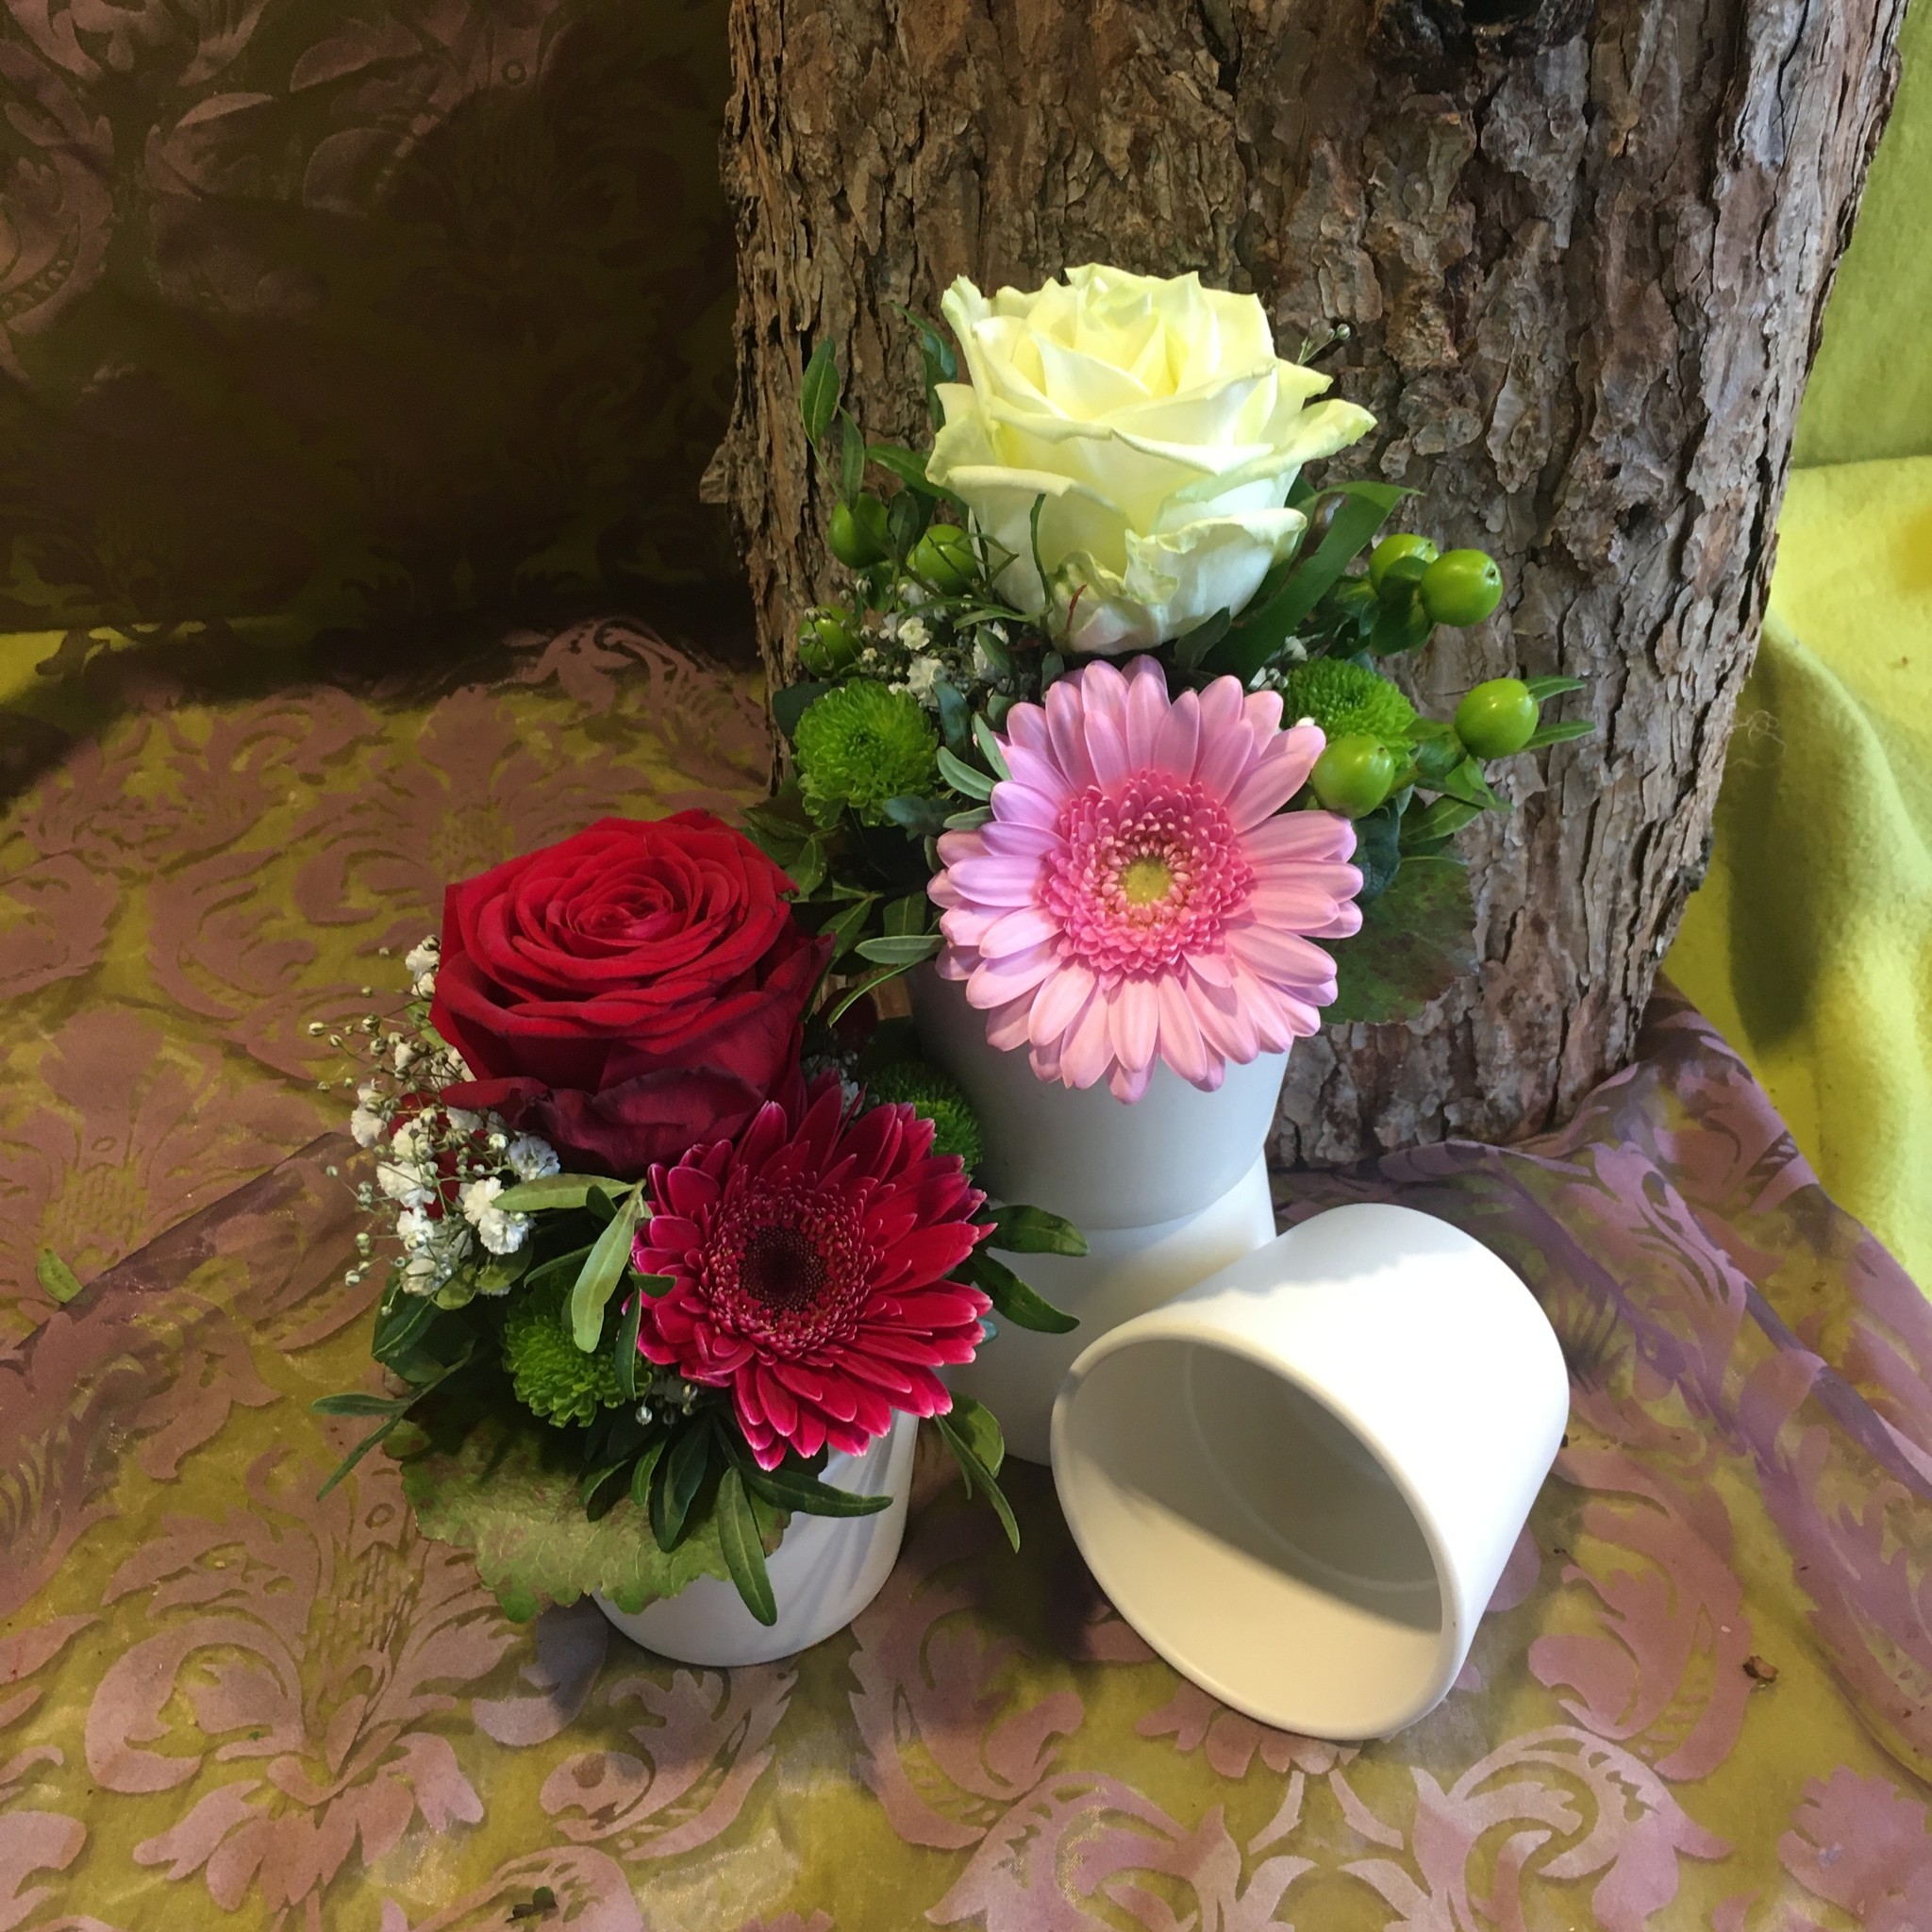 Tischgesteck klein weiß - rosa  im Keramiktopf